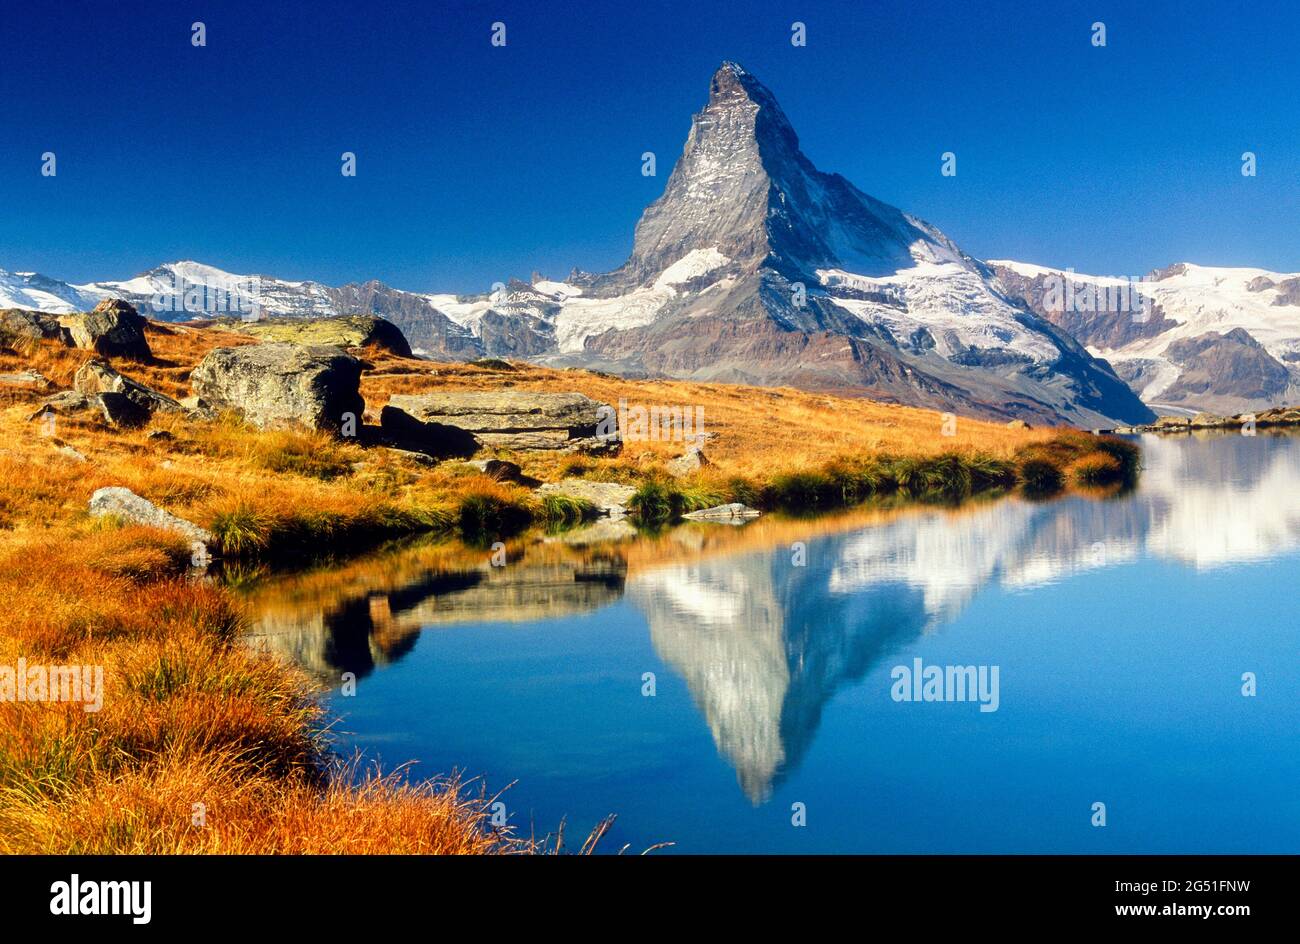 Vue sur le lac avec la montagne reflétée dans l'eau, Matterhorn, Zermatt, Suisse Banque D'Images